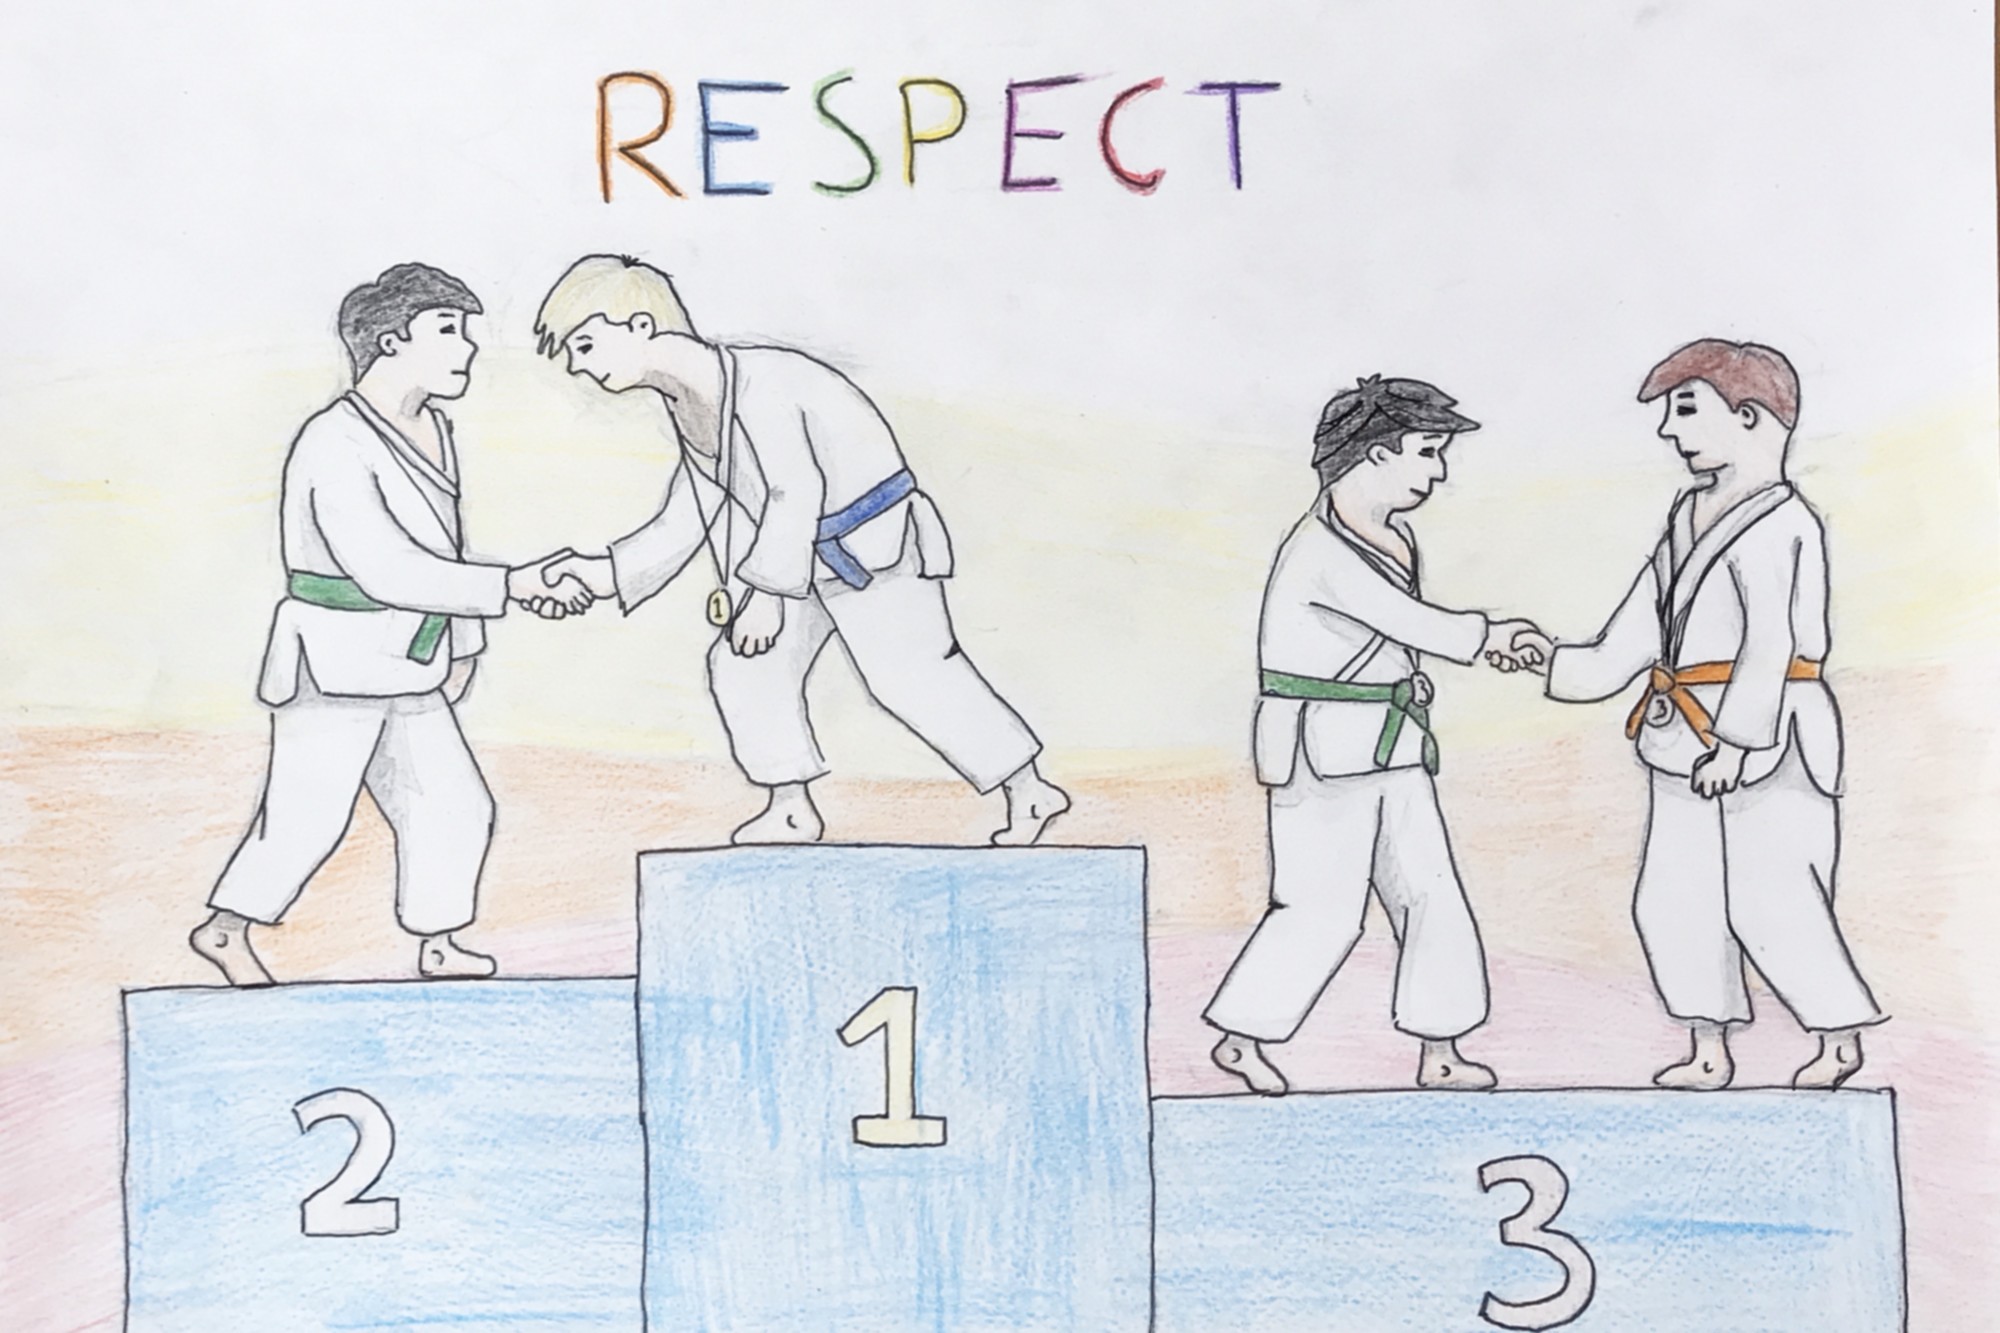 Sketch judo watercolor vectors 01 free download